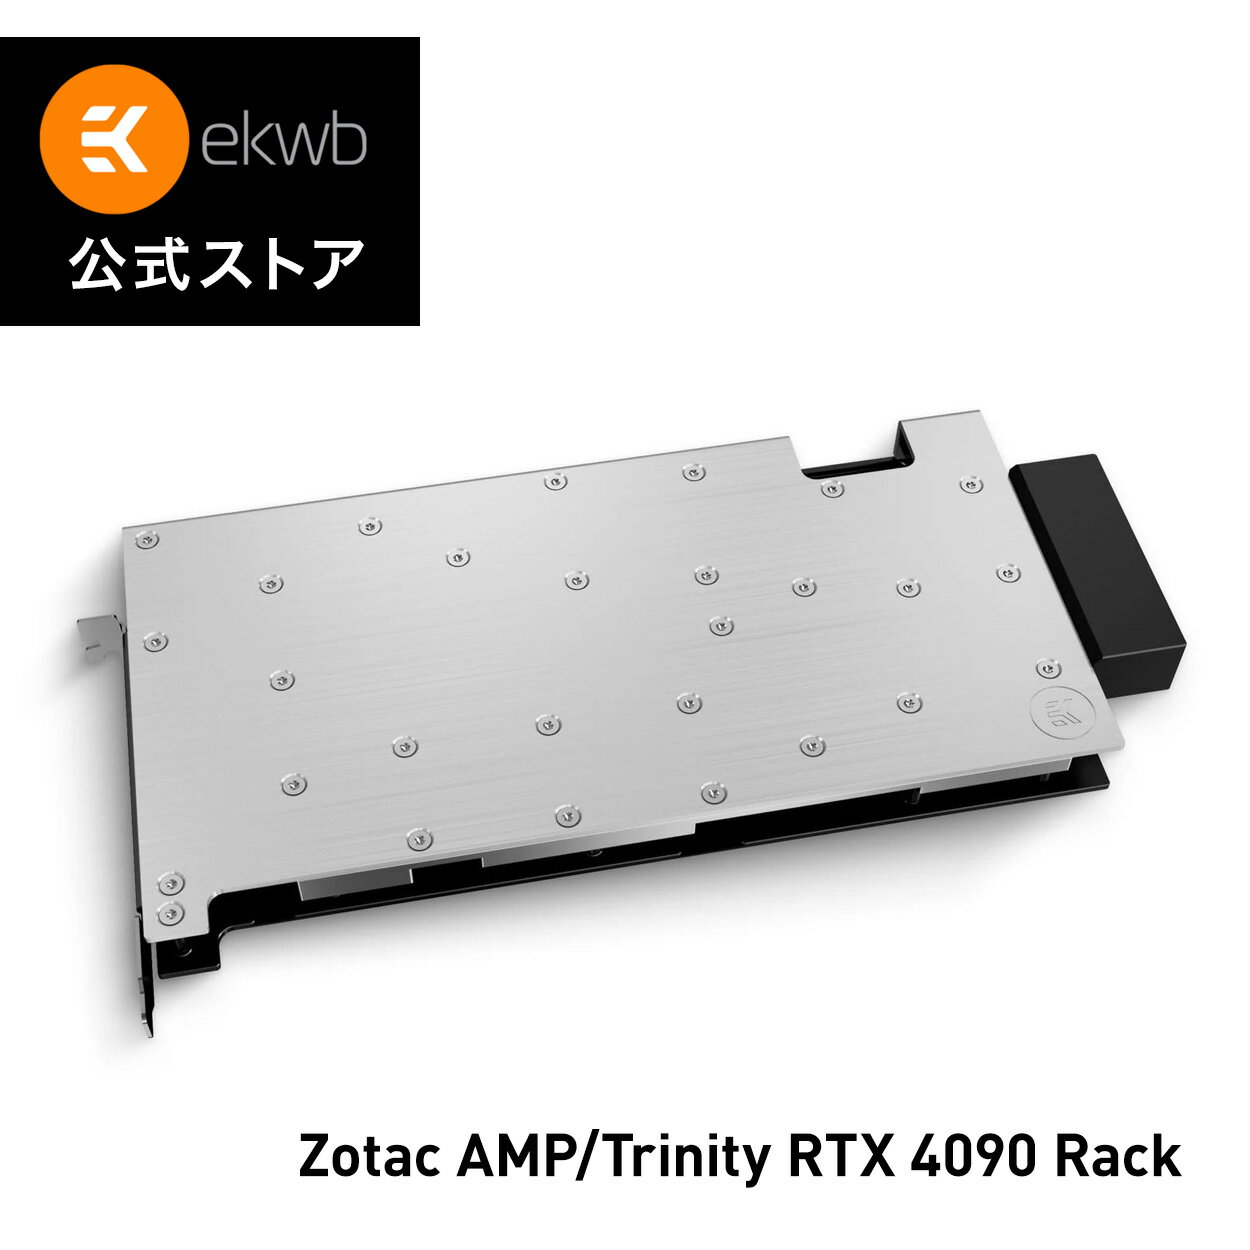 楽天EKWB公式ストア 楽天市場店【EKWB公式】EK-Pro GPU WB AMP/Trinity RTX 4090 Rack - Nickel + Inox